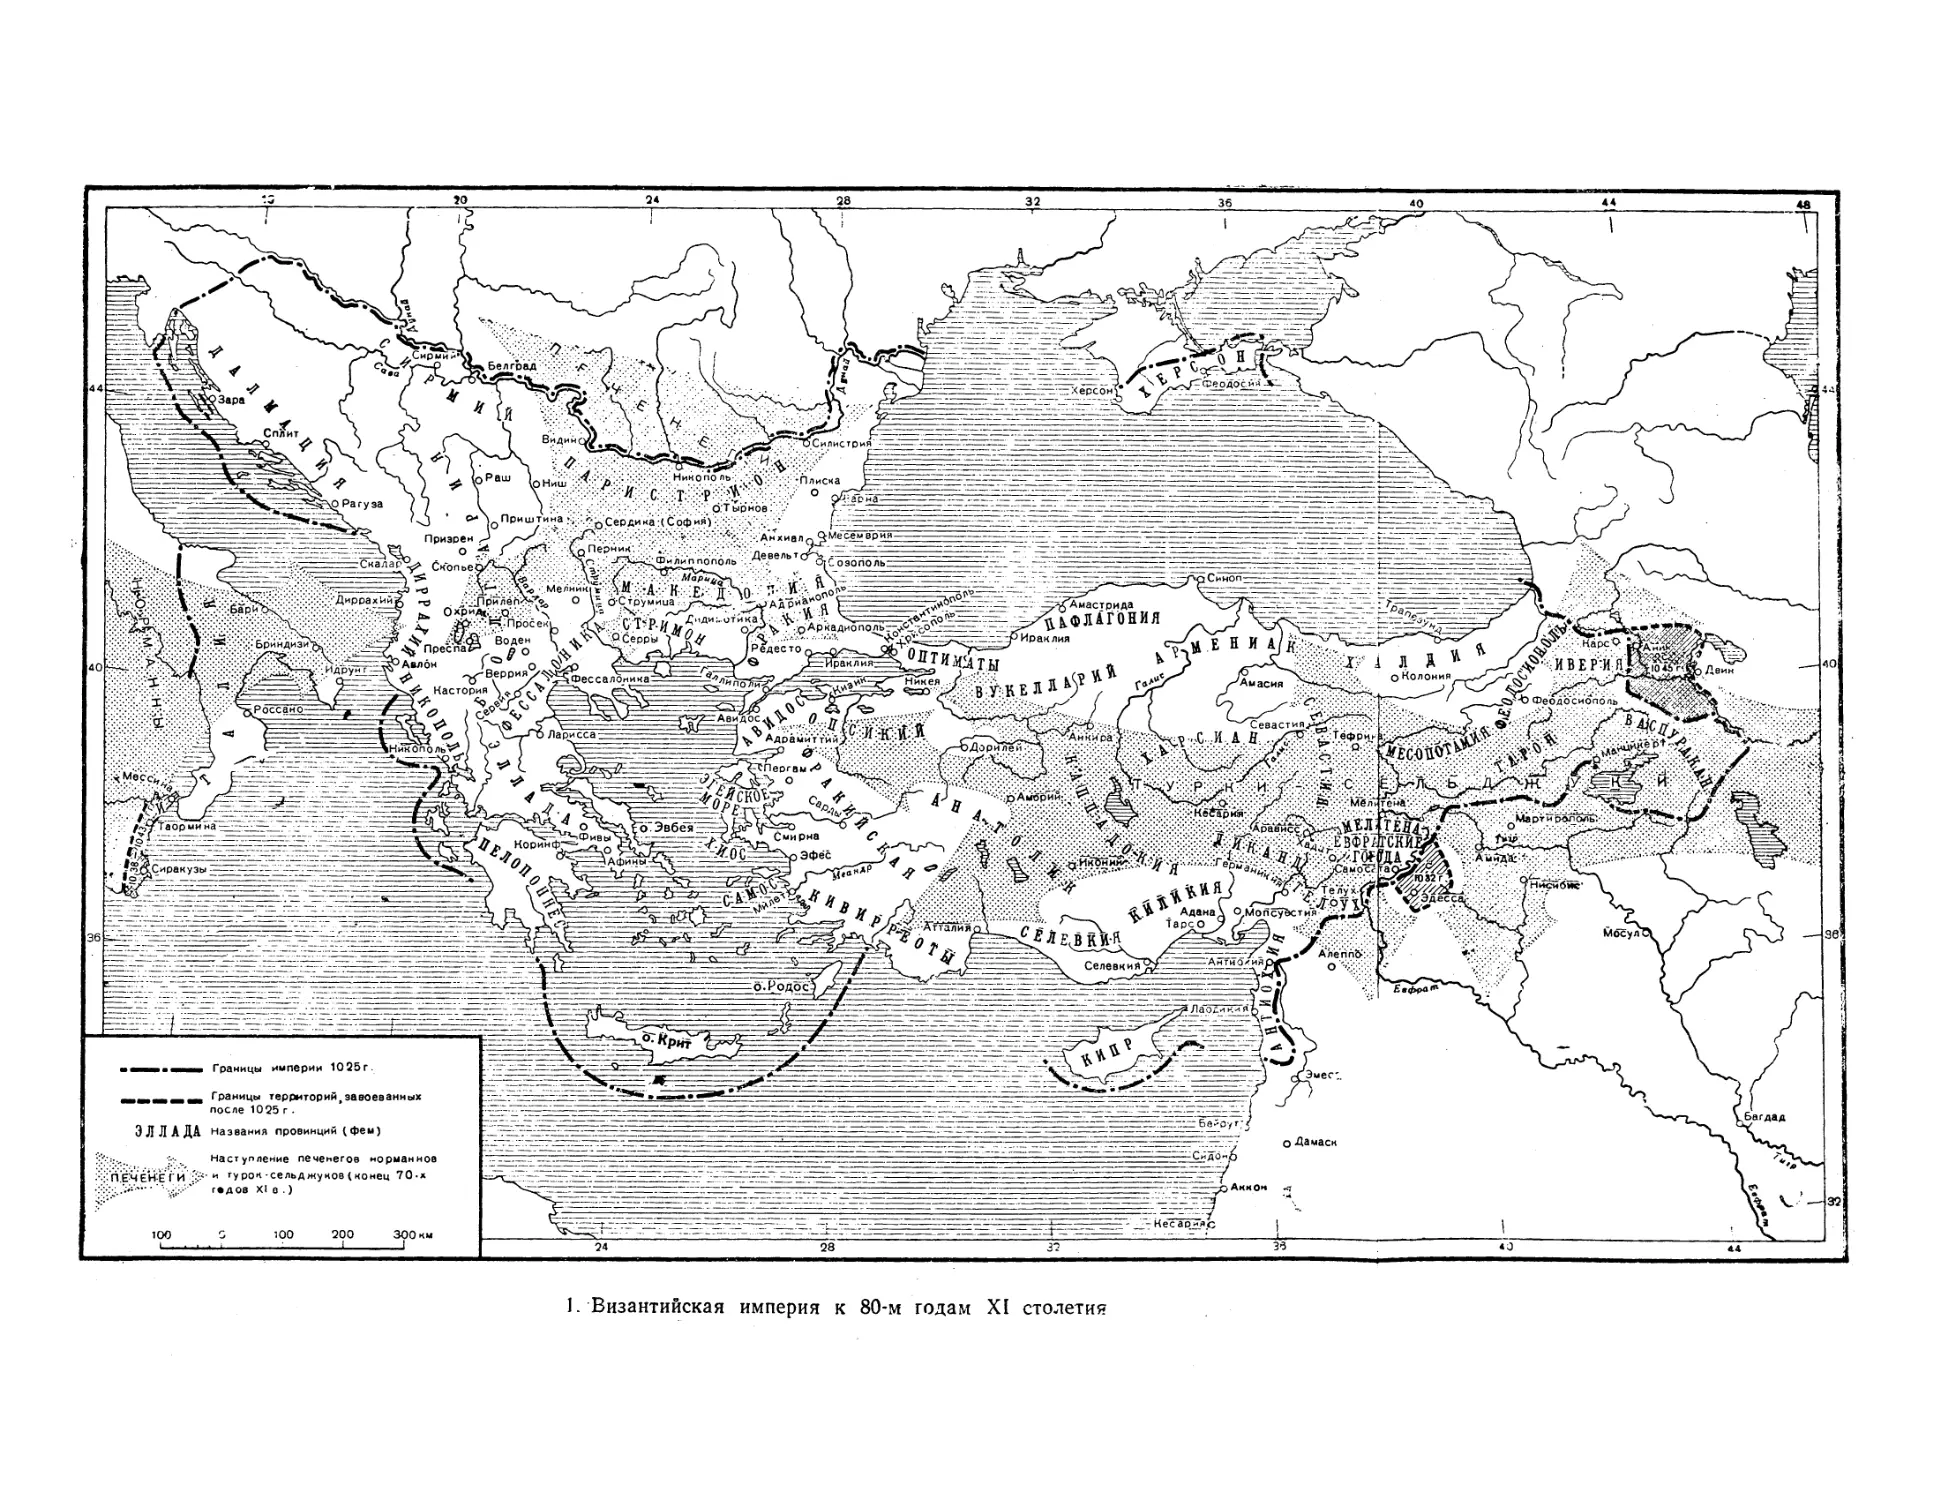 Вклейка. 1. Византийская империя к 80-м годам XI столетия